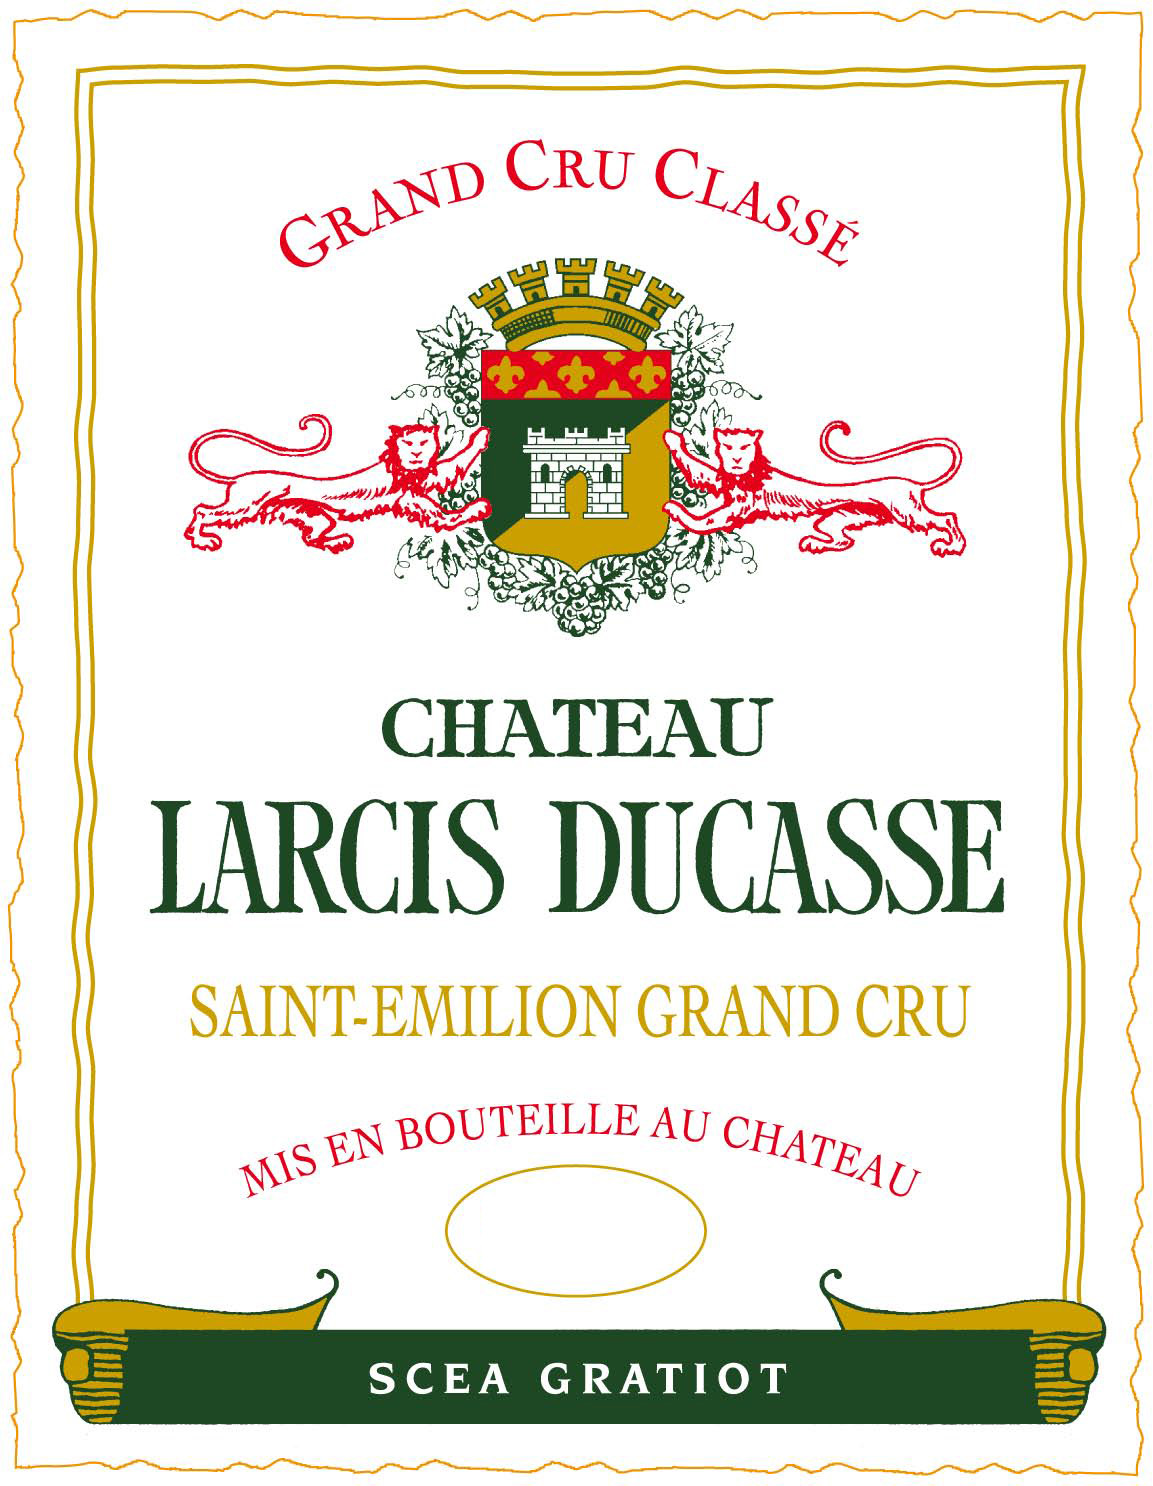 Chateau Larcis Ducasse label